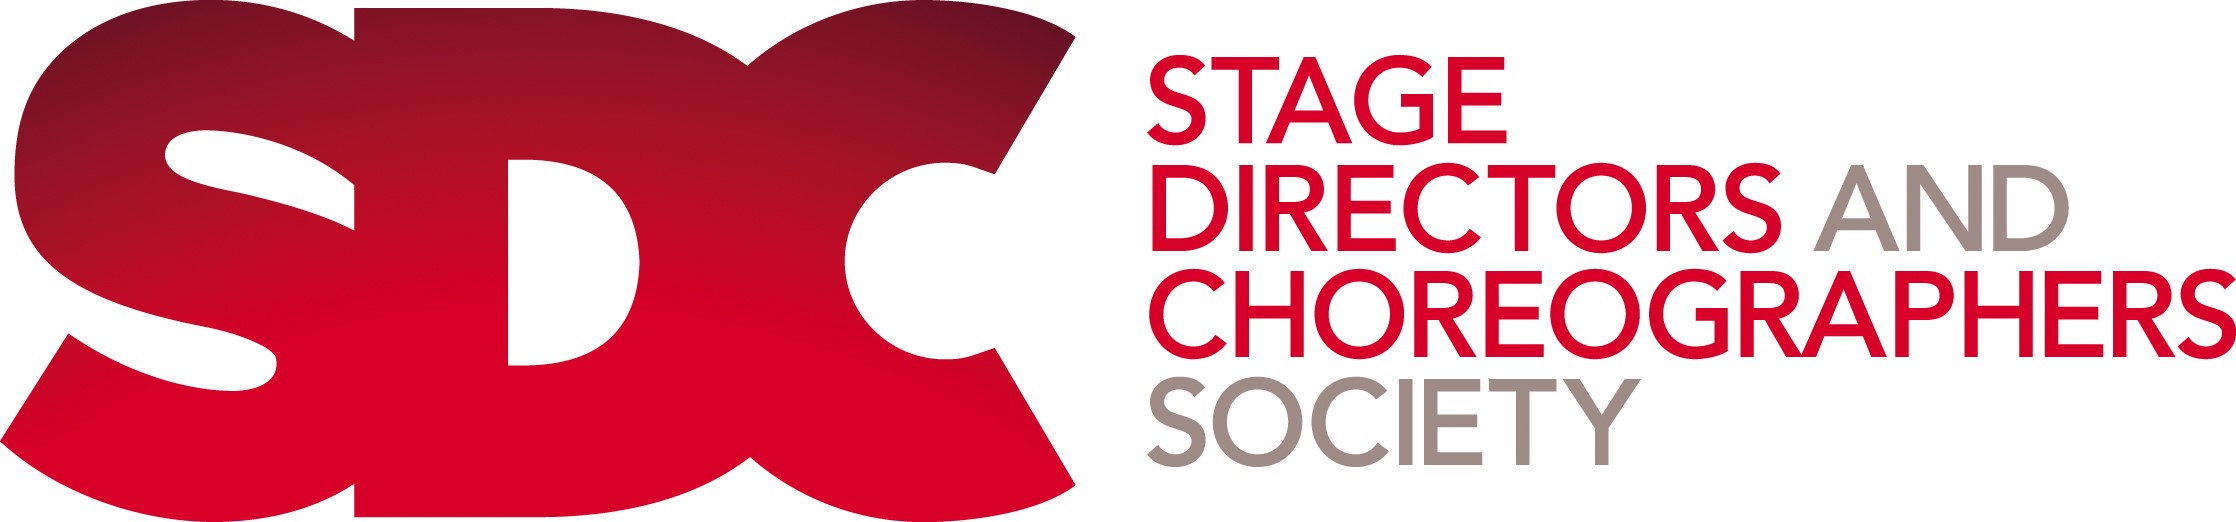 SDC website logo.jpg